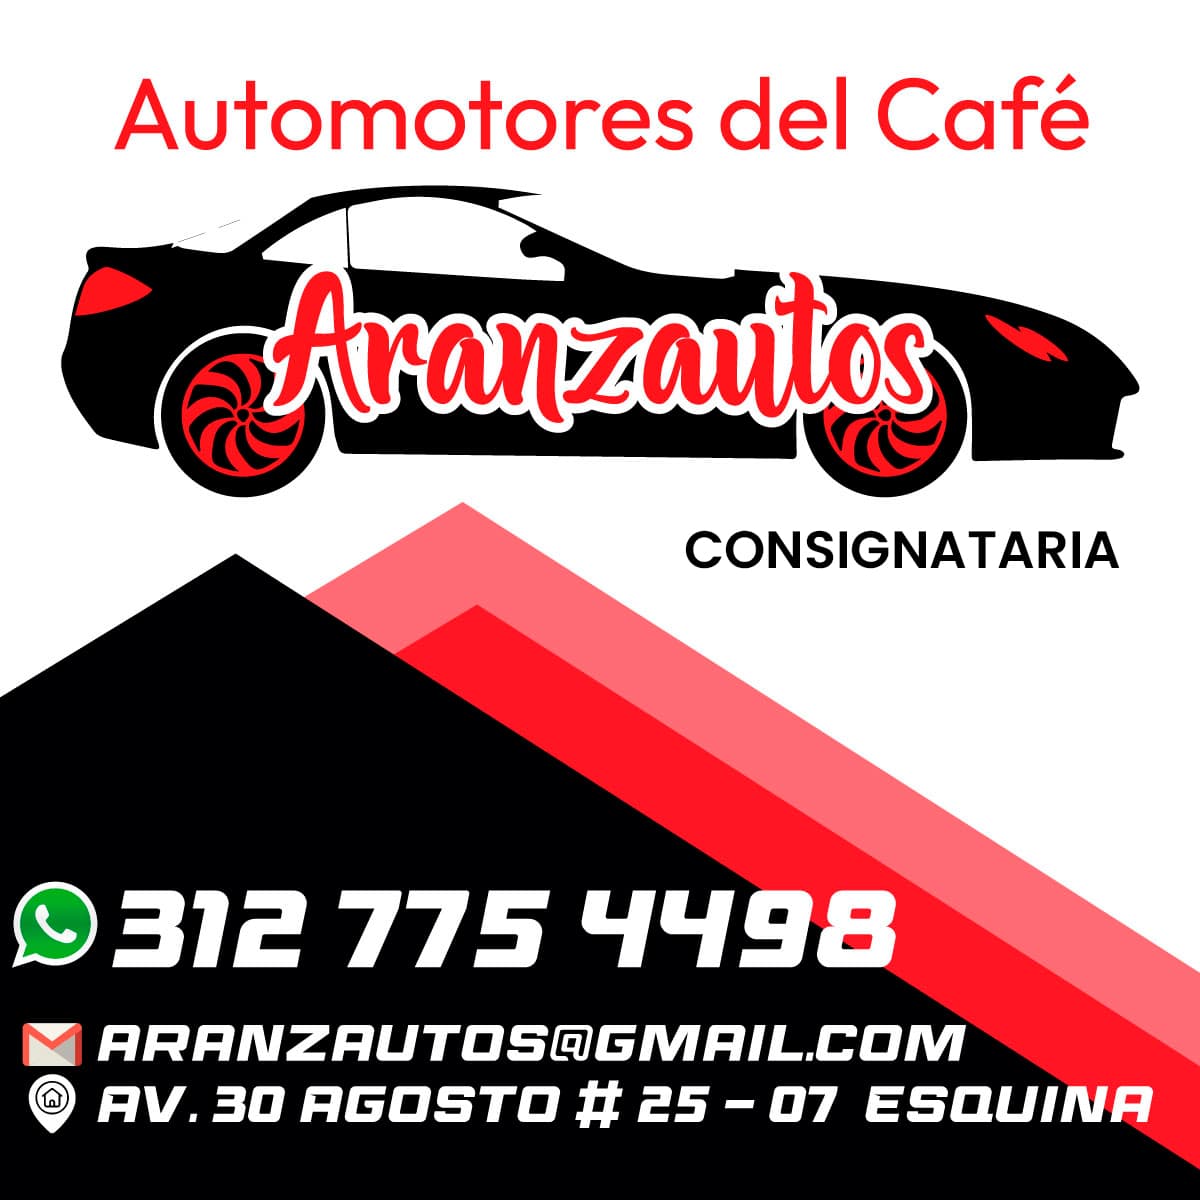 Automotores del Café Aranzautos